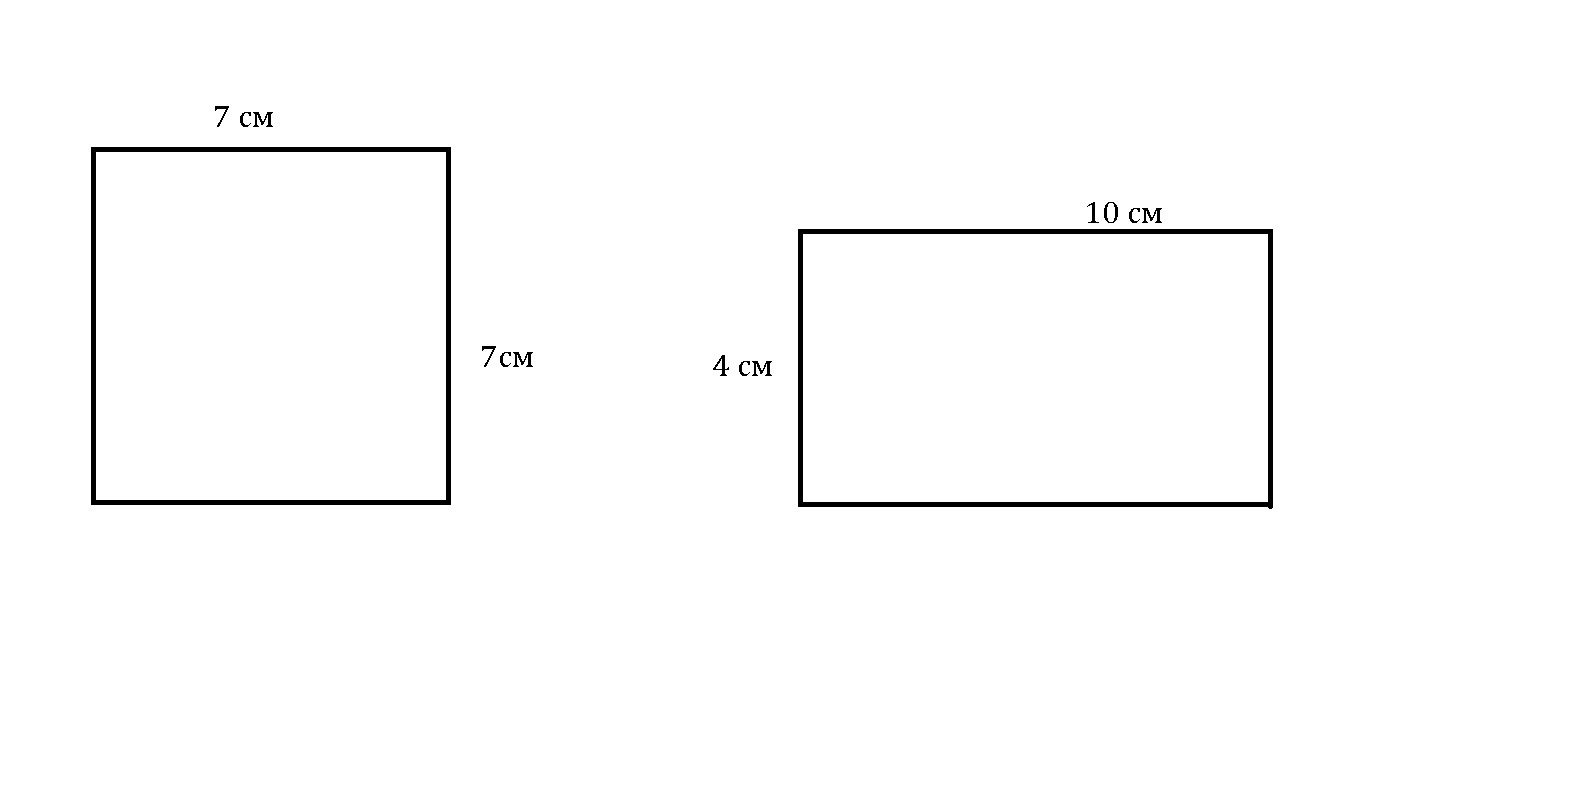 Asdf квадрат со стороной 15 см. Прямоугольник с площадью 28 см2. Начерти прямоугольник с площадью 28 см2. Начертить прямоугольник с площадью 28 см2. Размер квадрата в сантиметрах.